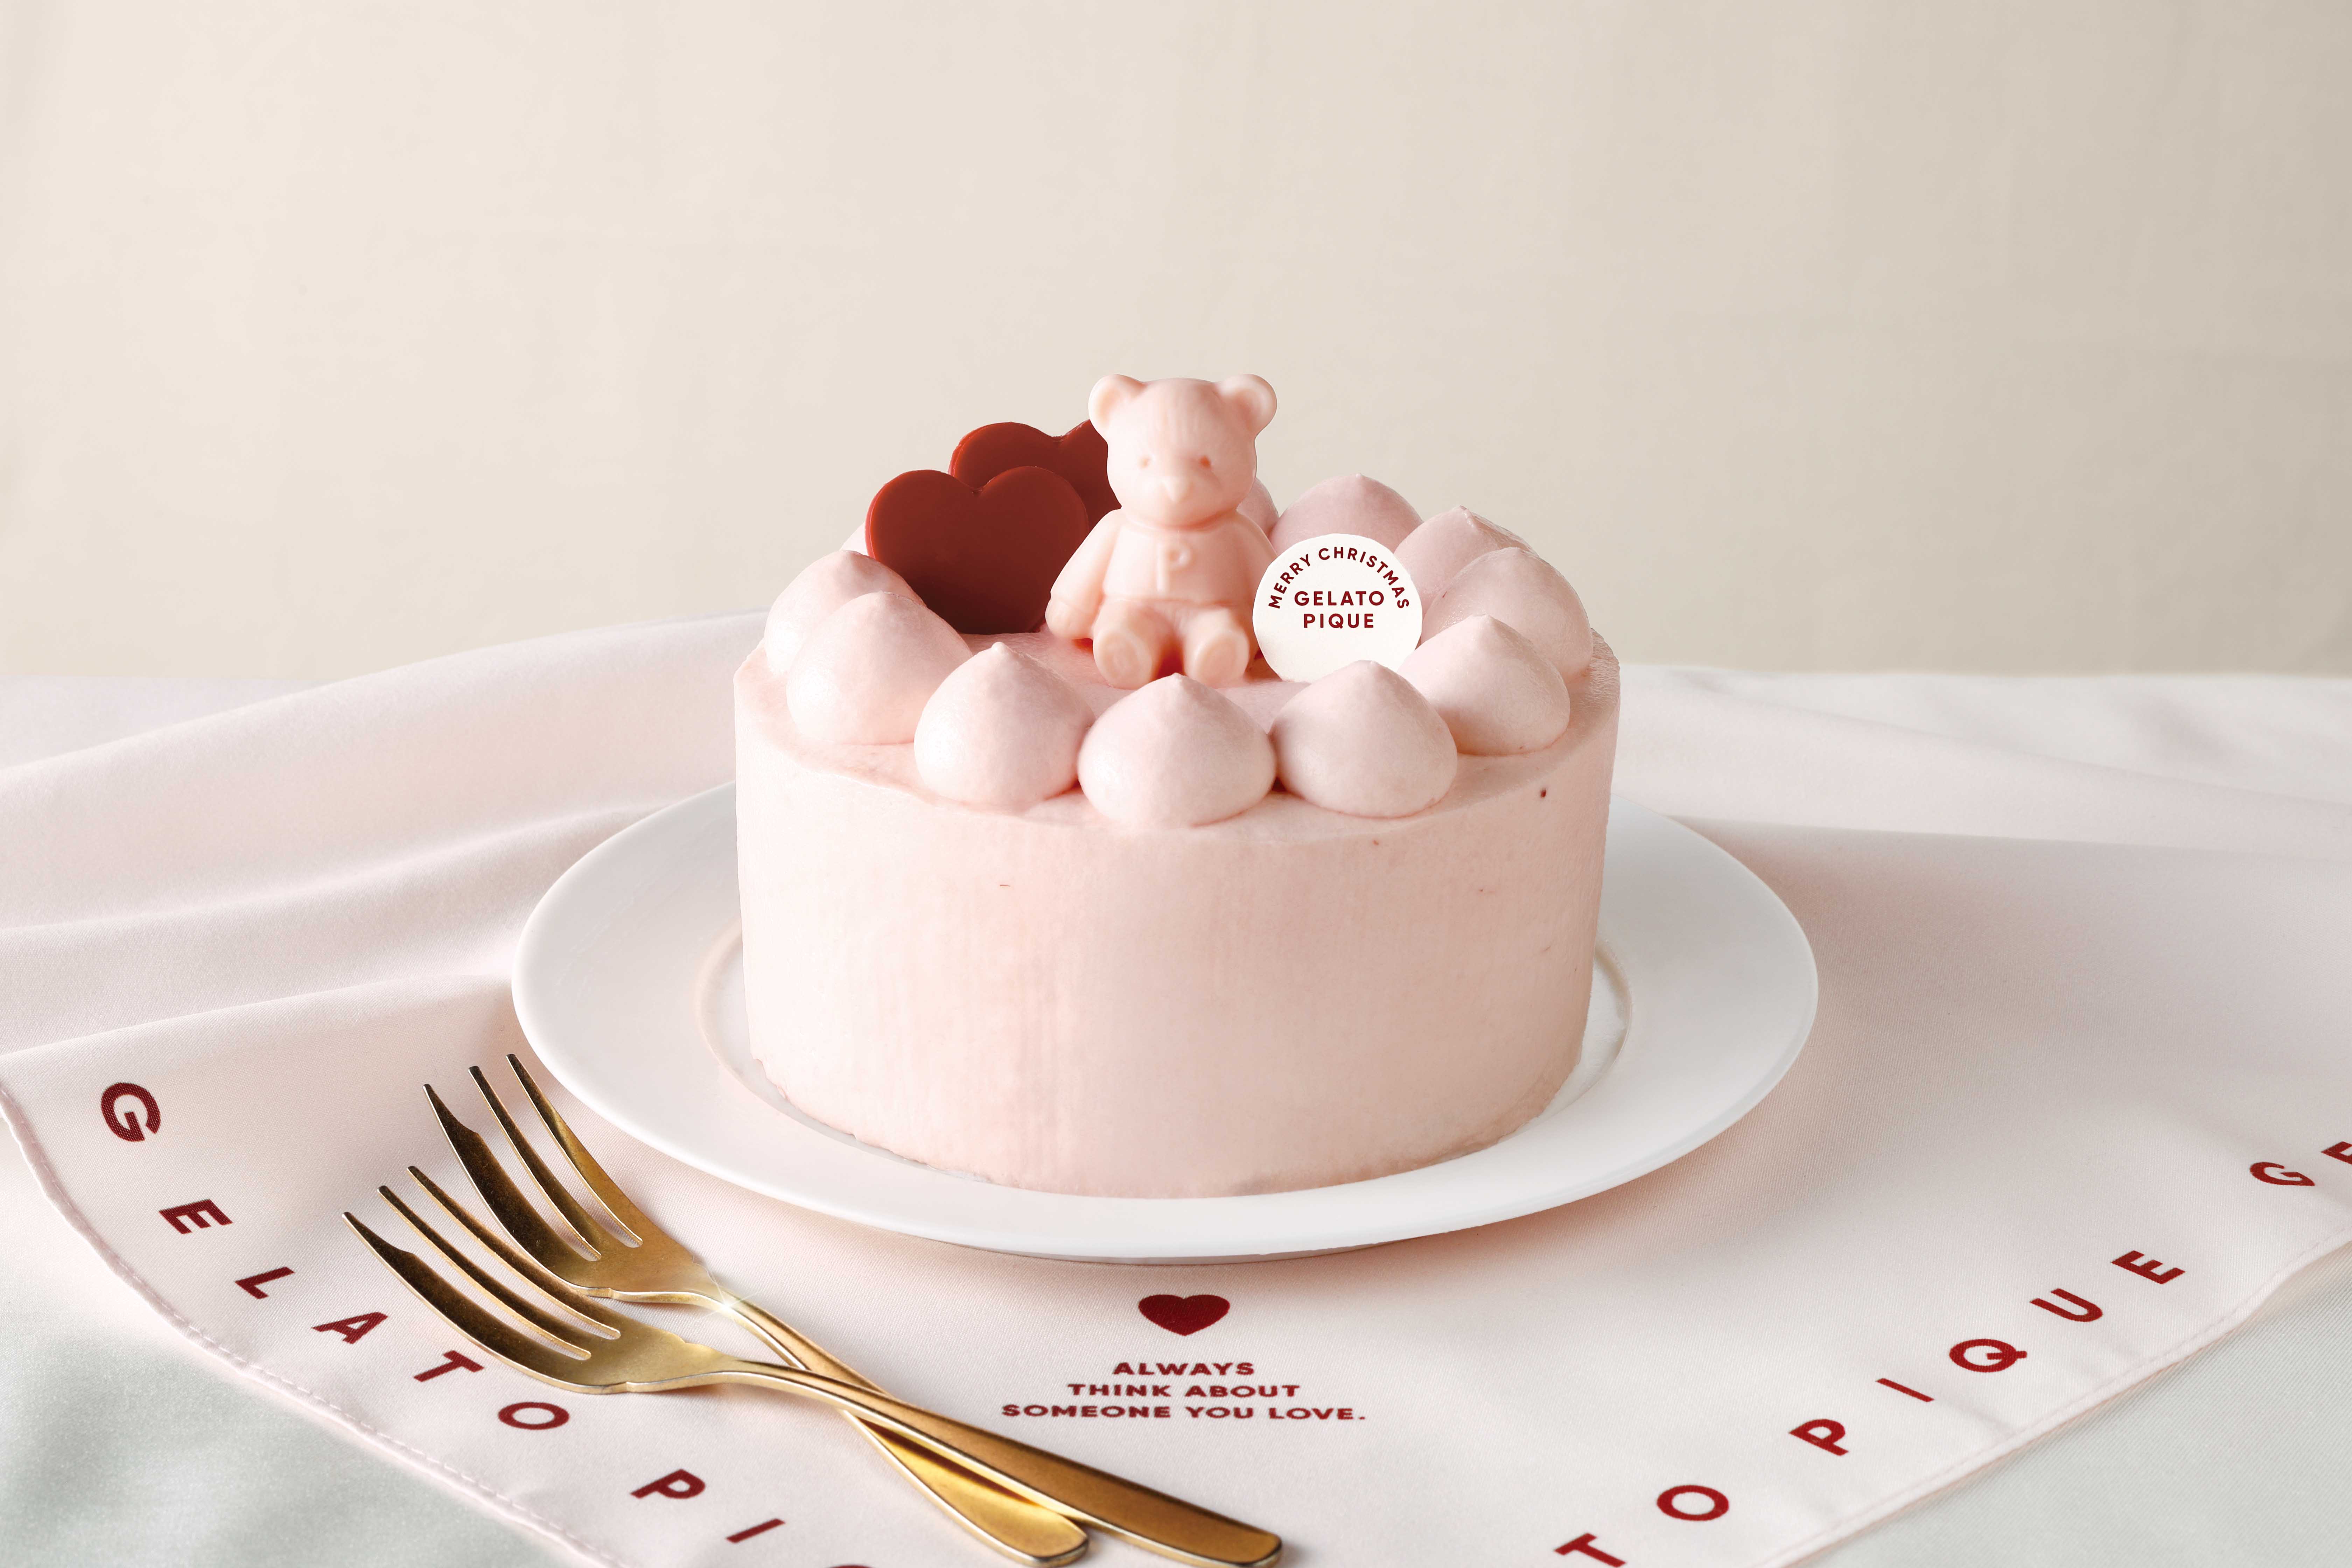 【gelato pique(ジェラートピケ)】クリスマスケーキ第4弾はピンクが主役！ピンクの”ピケベア”×クリームチーズと紅茶のフレーバーに心躍るスペシャルケーキが9月18日(月)より予約受付開始🧸🎂💗